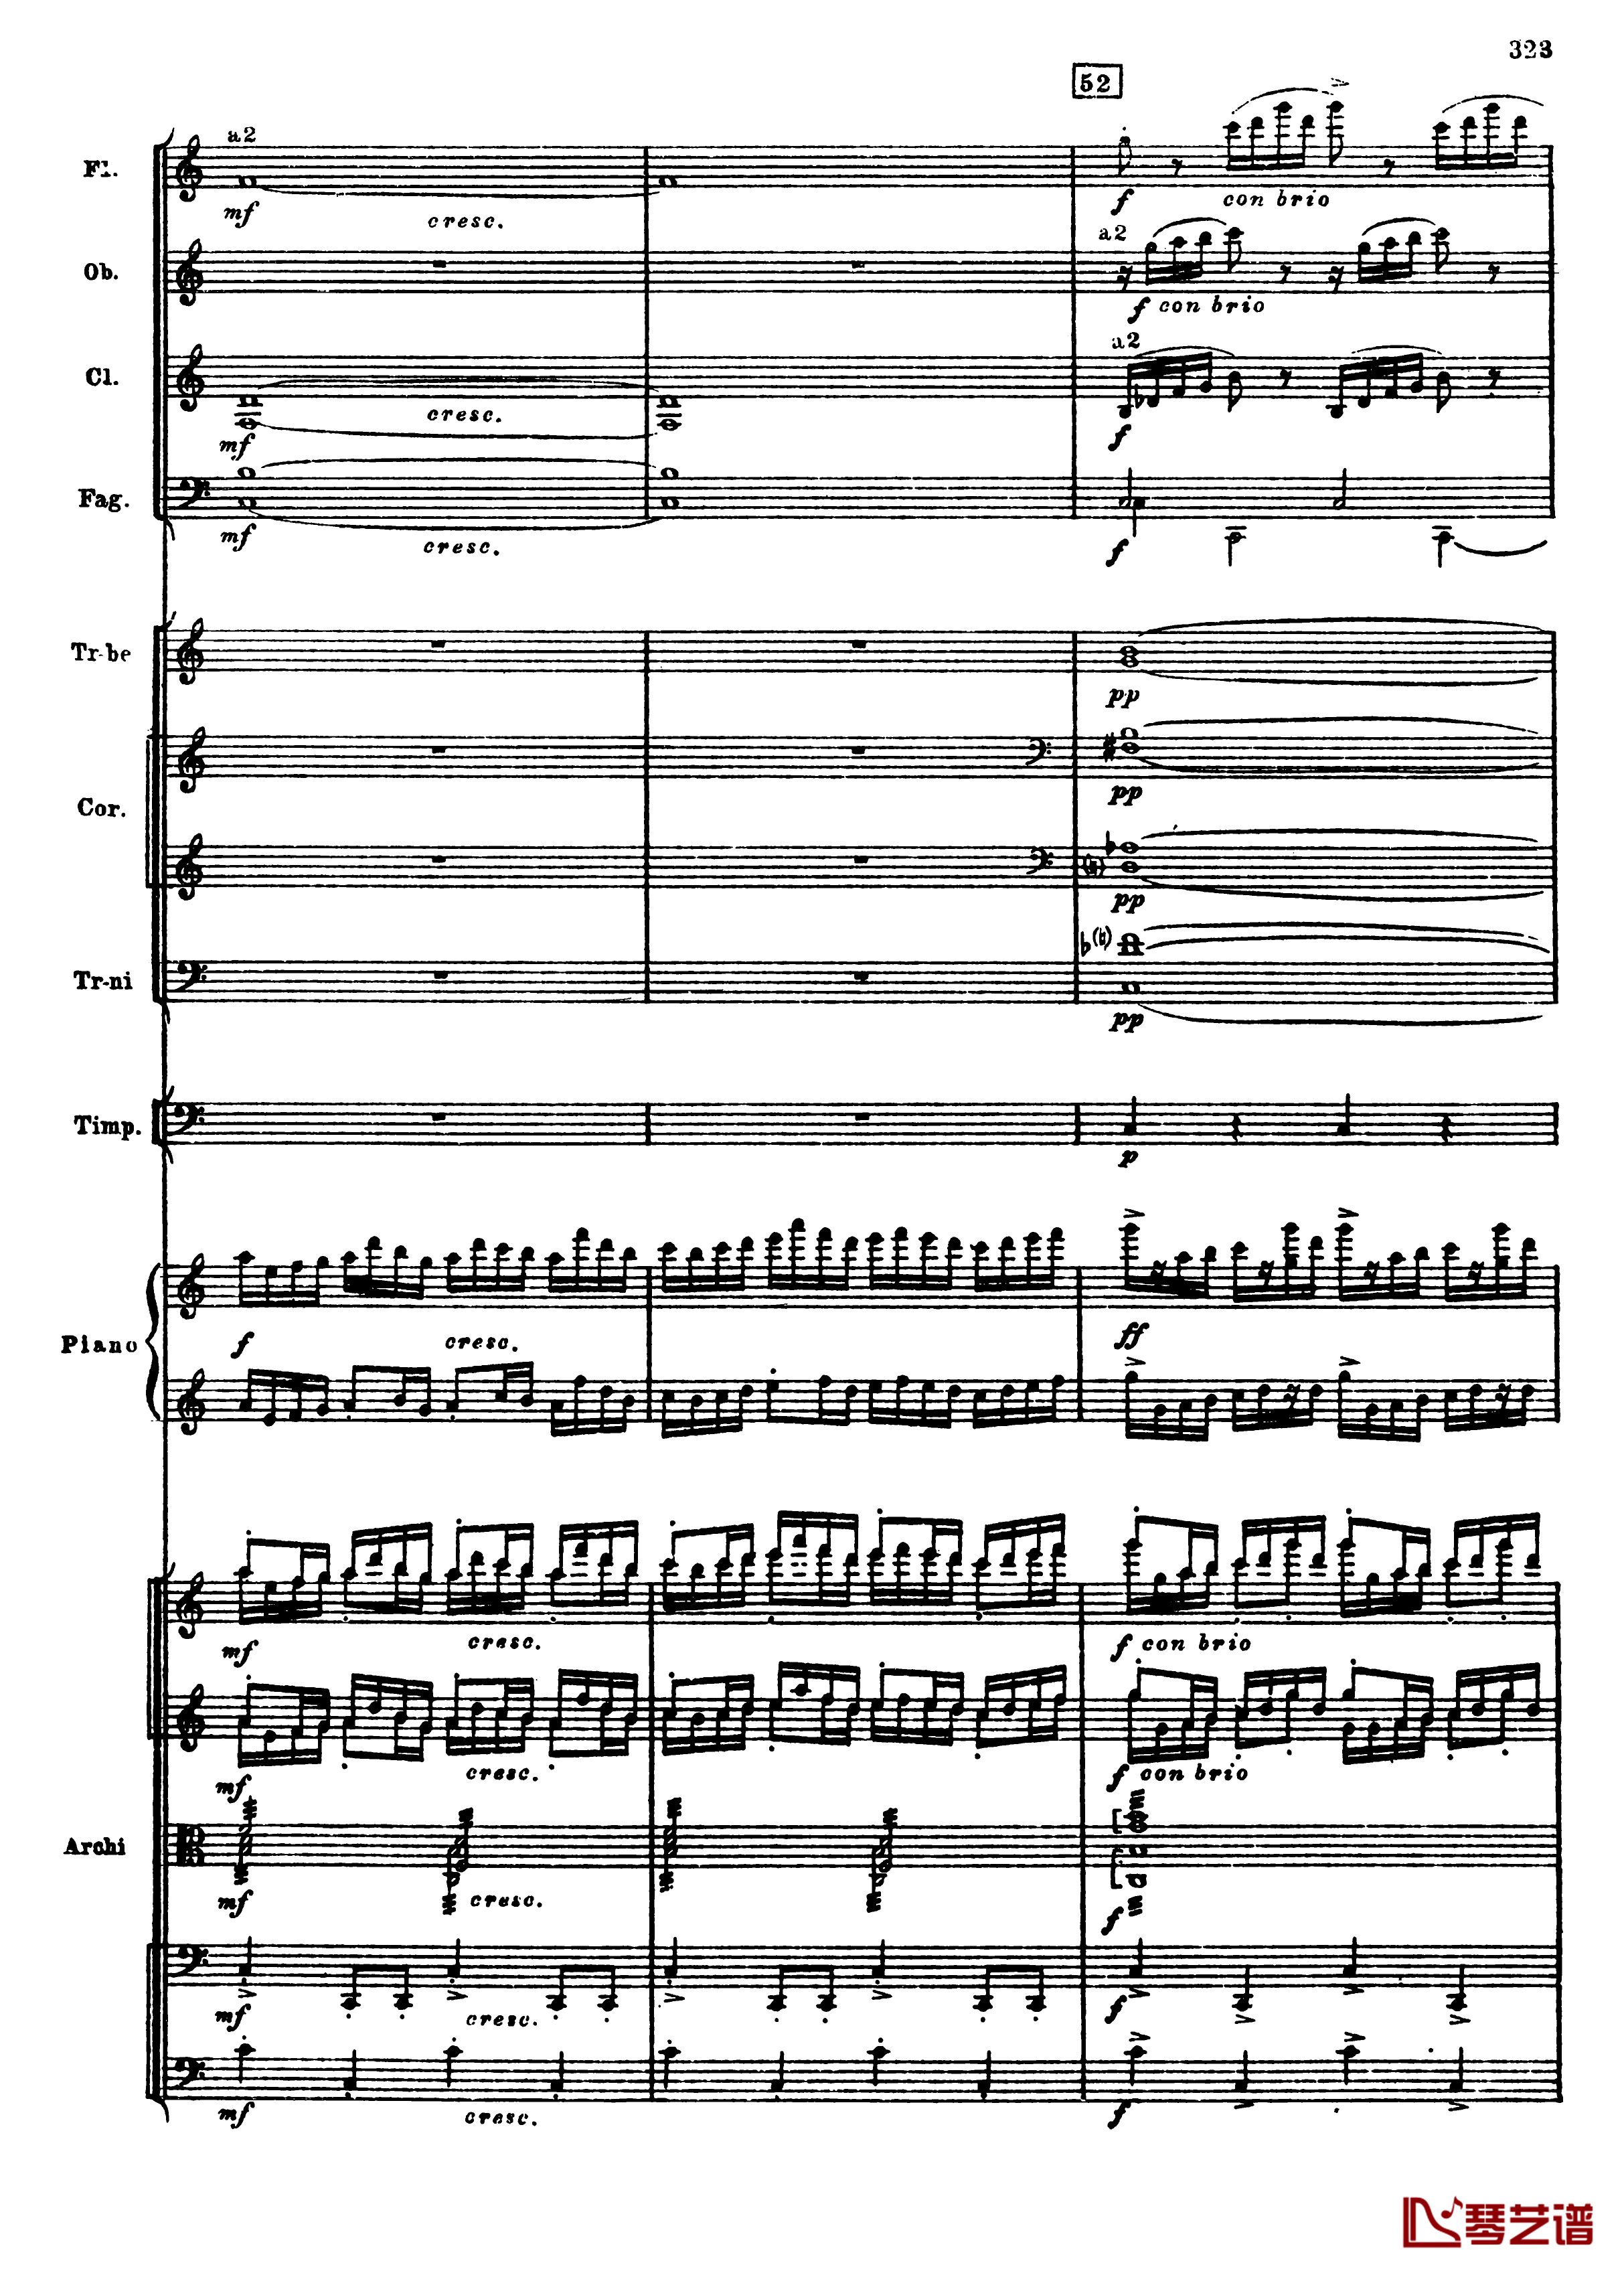 普罗科菲耶夫第三钢琴协奏曲钢琴谱-总谱-普罗科非耶夫55